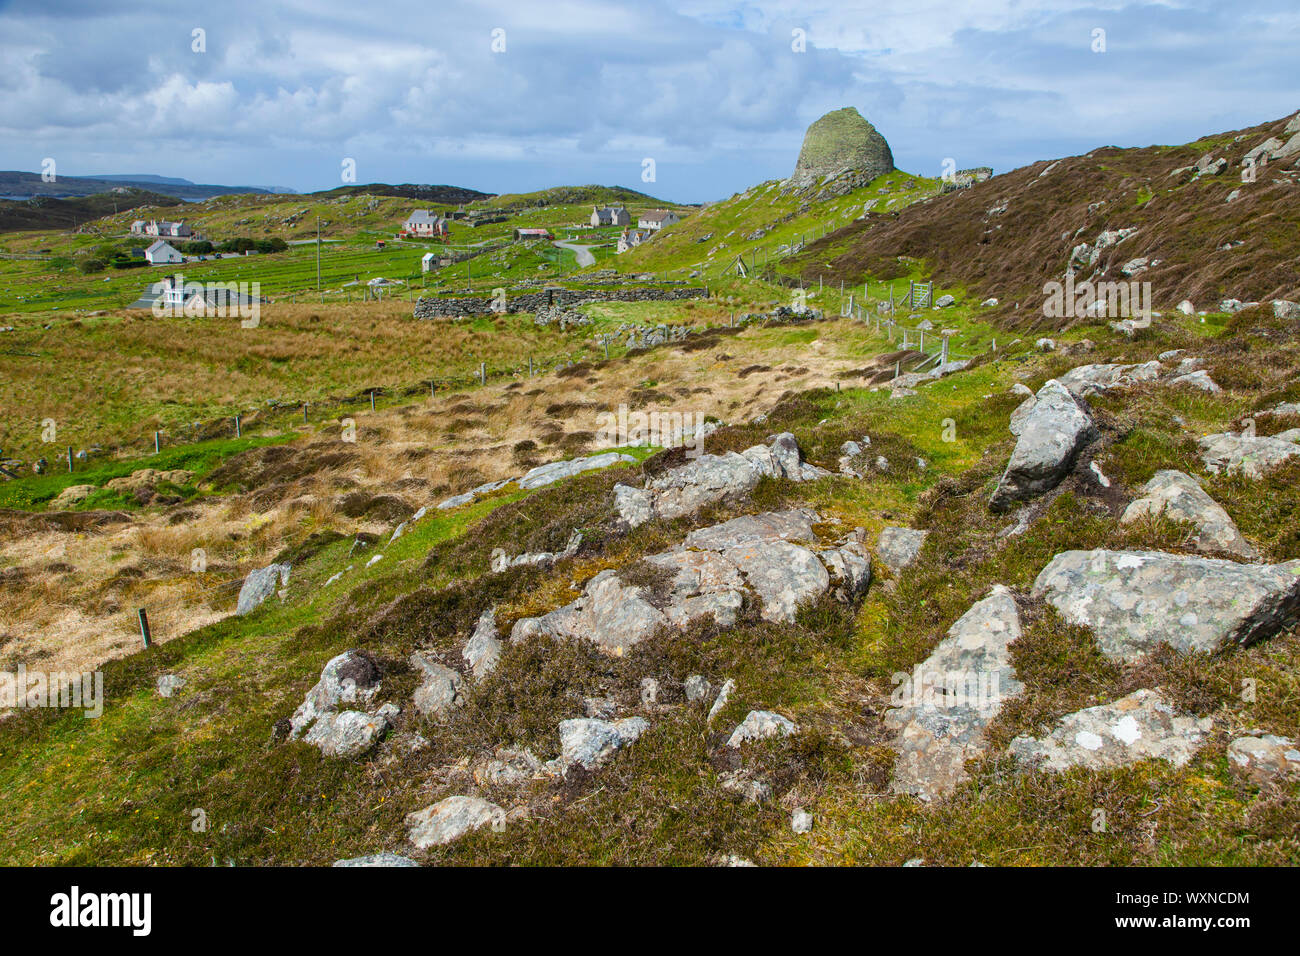 Monumento Neolítico Broch de Carloway. Isla Lewis. Outer Hebrides. Escocia. UK Stock Photo